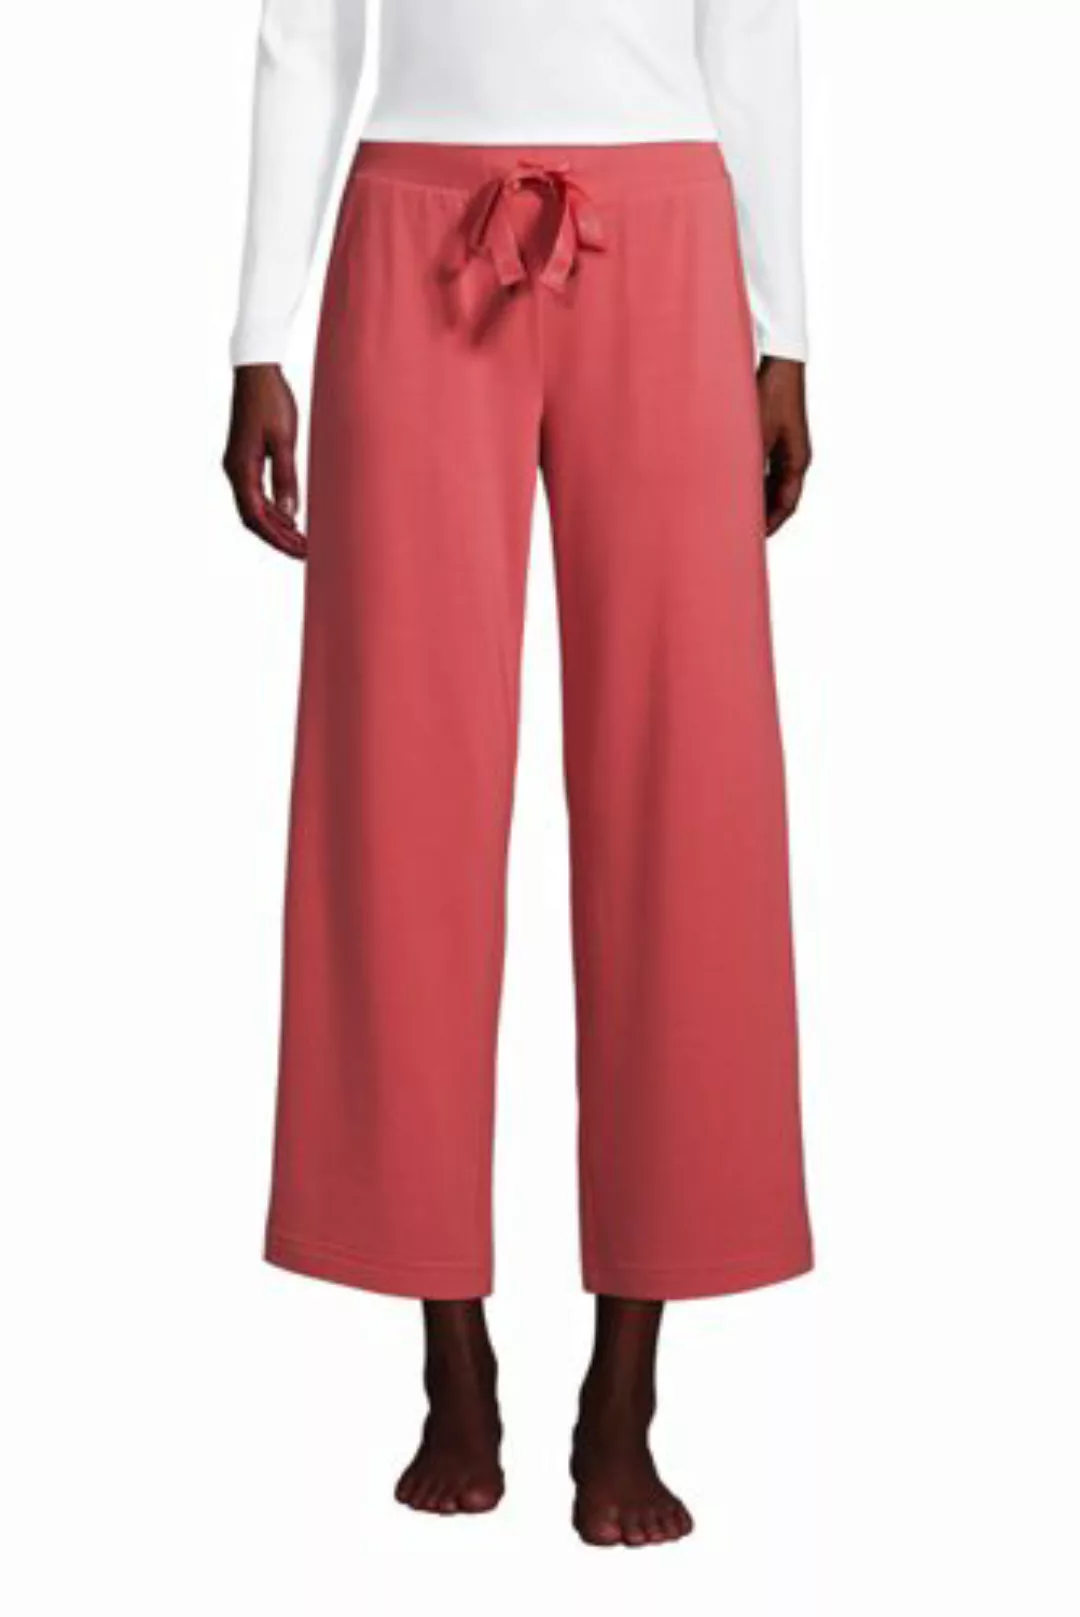 Weite Jersey Pyjama-Hose in 7/8-Länge in Petite-Größe, Damen, Größe: L Peti günstig online kaufen